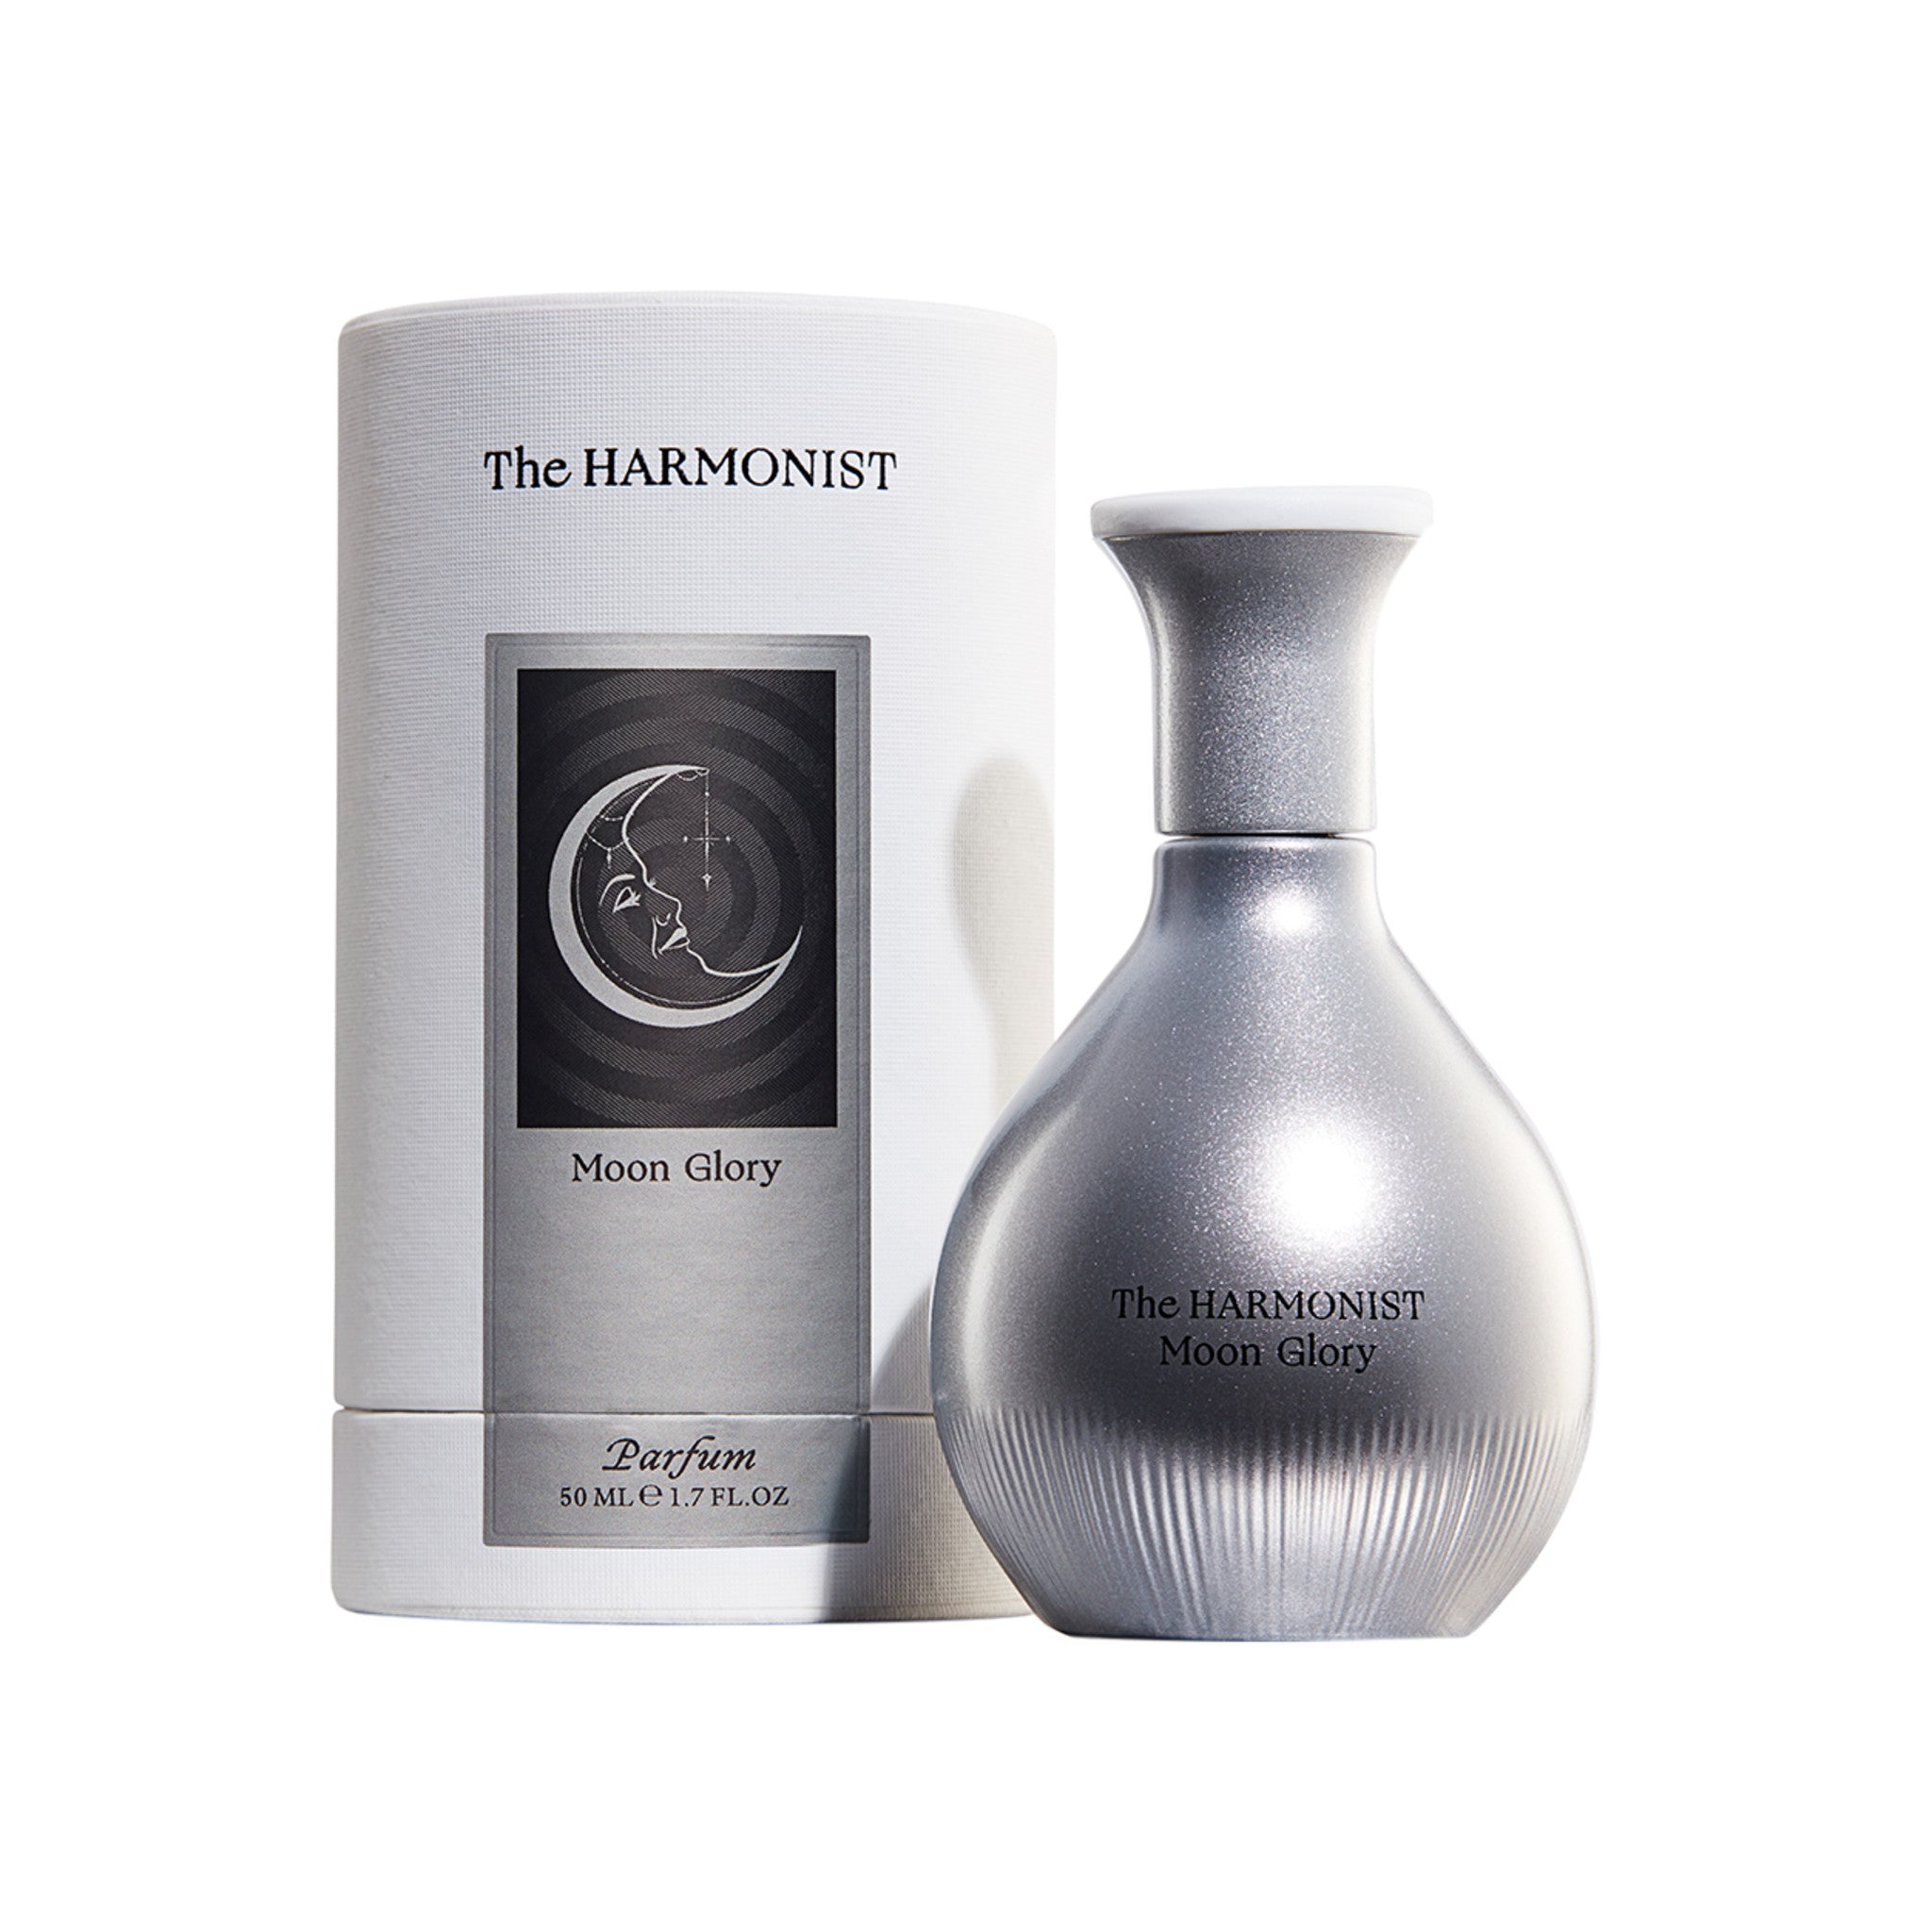 The Harmonist Moon Glory Parfum main image.